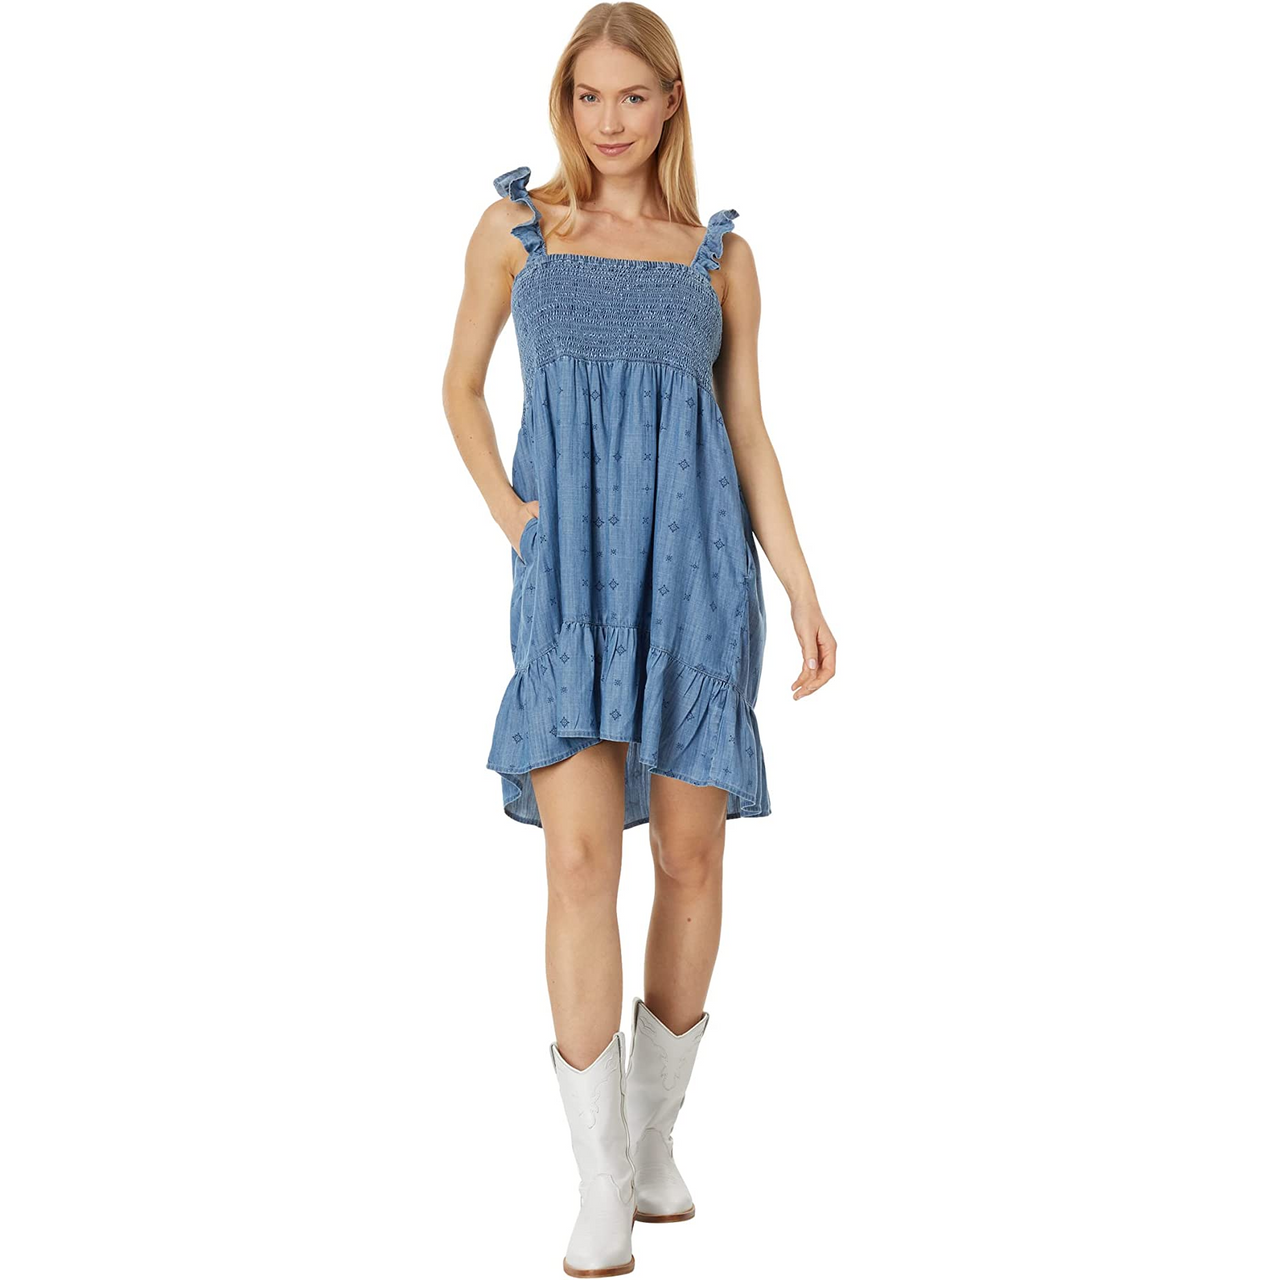 Ariat Women's Paisley Pursuit Dress - Light Denim Blue